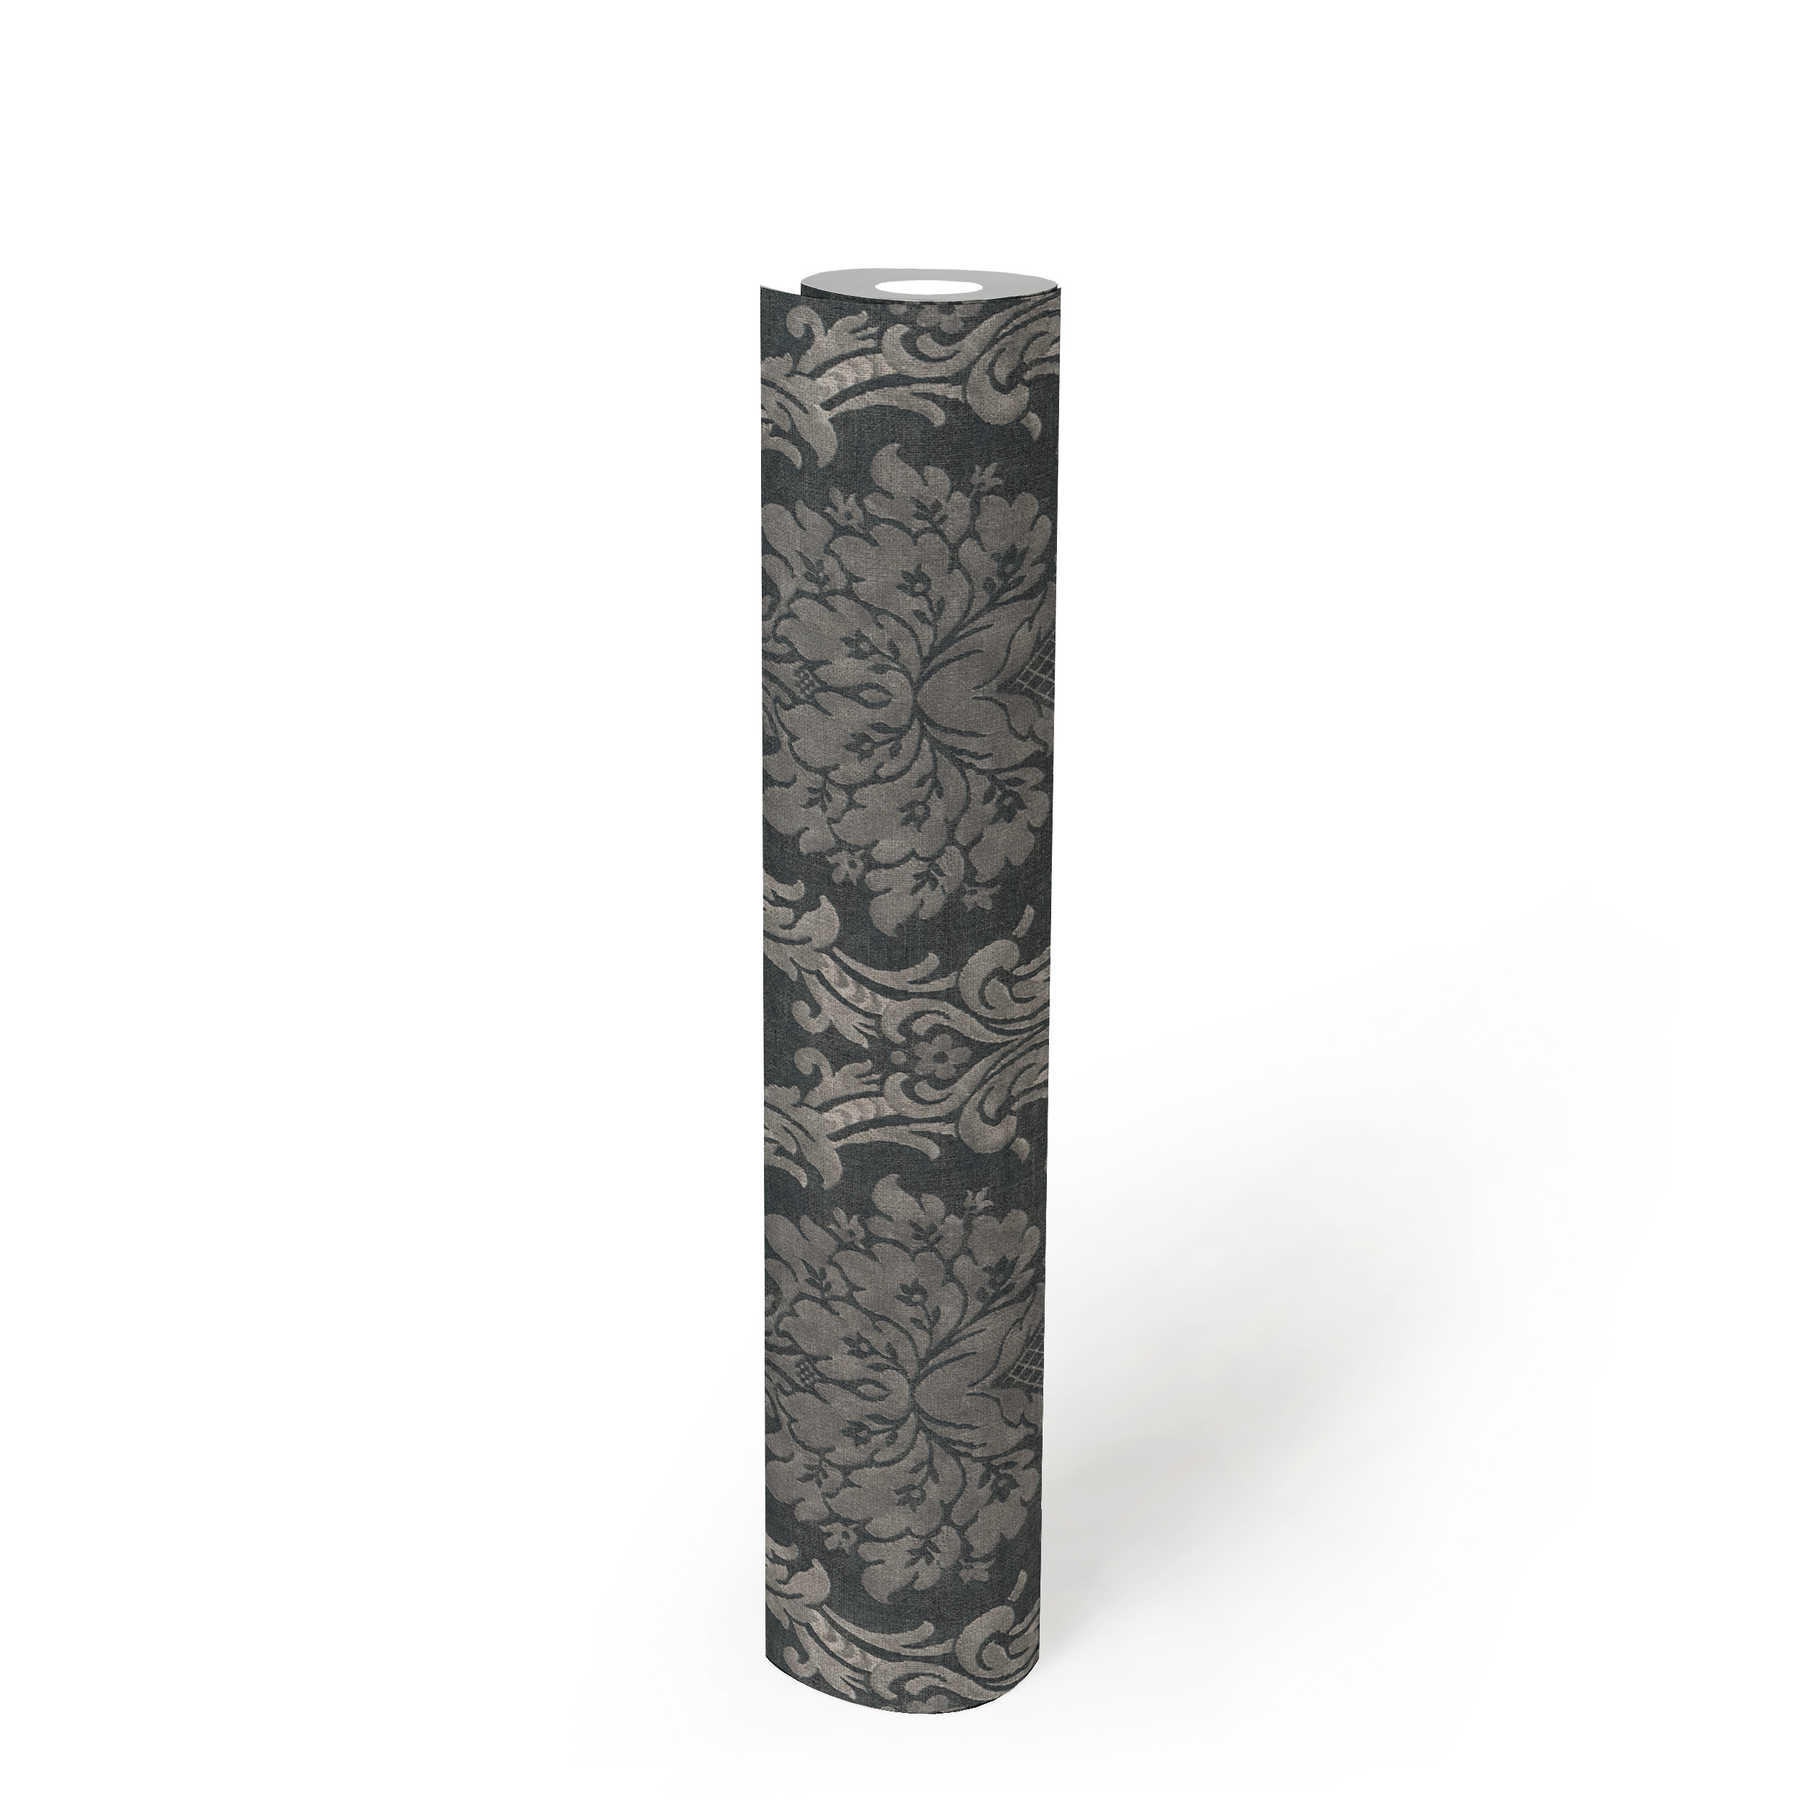             Papel pintado ornamental con motivos florales en forma de cesta - gris, negro
        